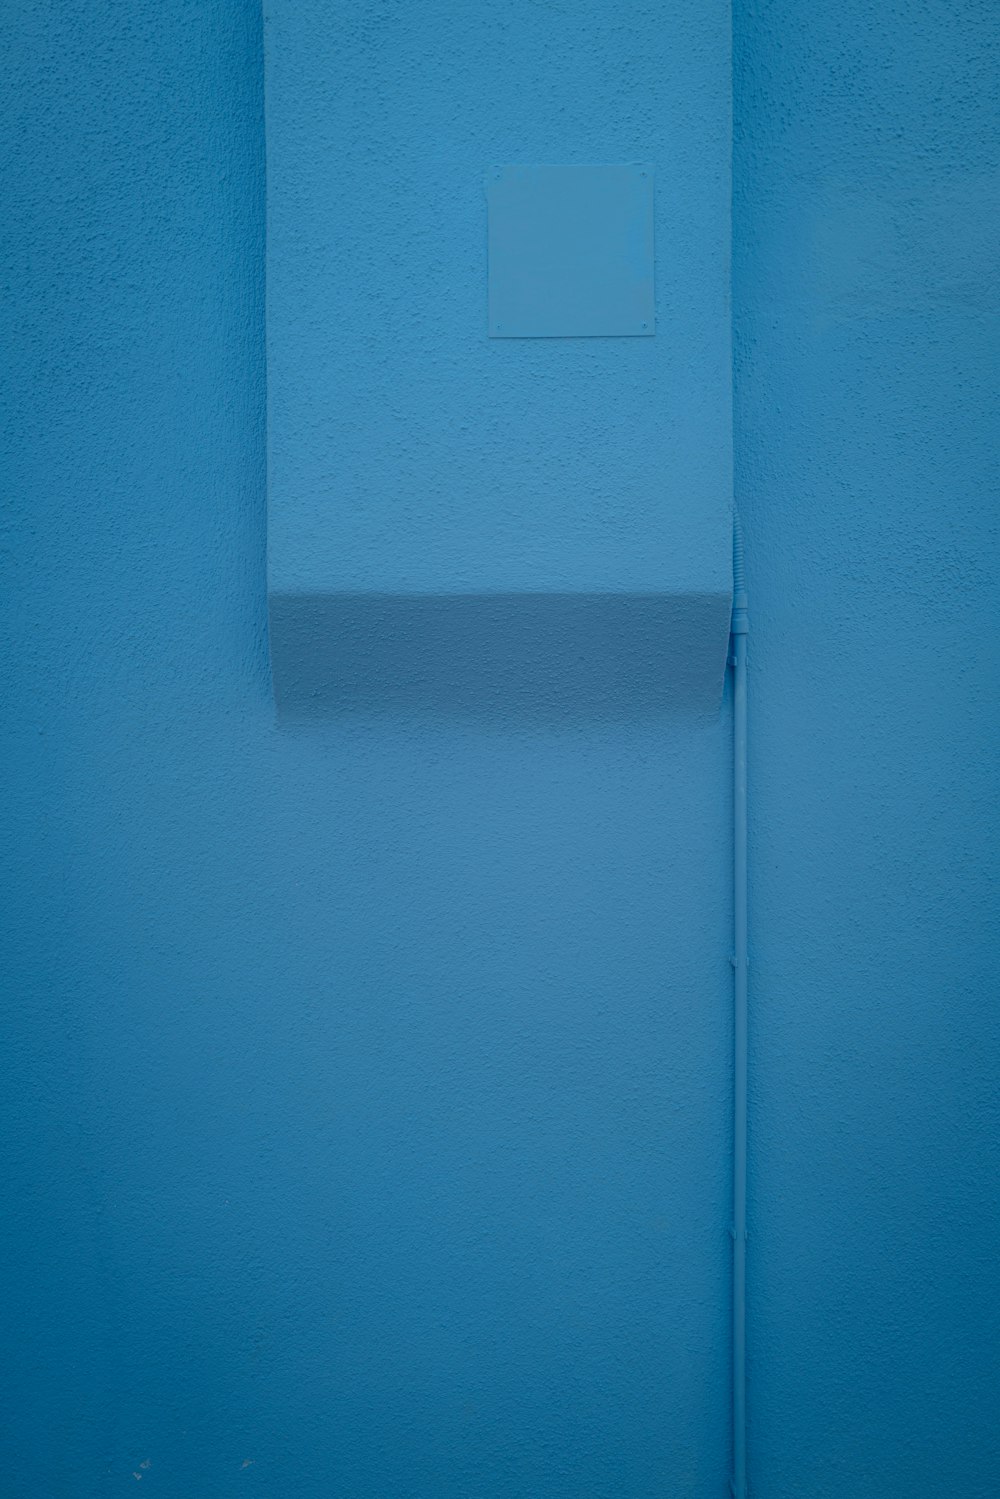 Interruptor de luz blanca en pared azul